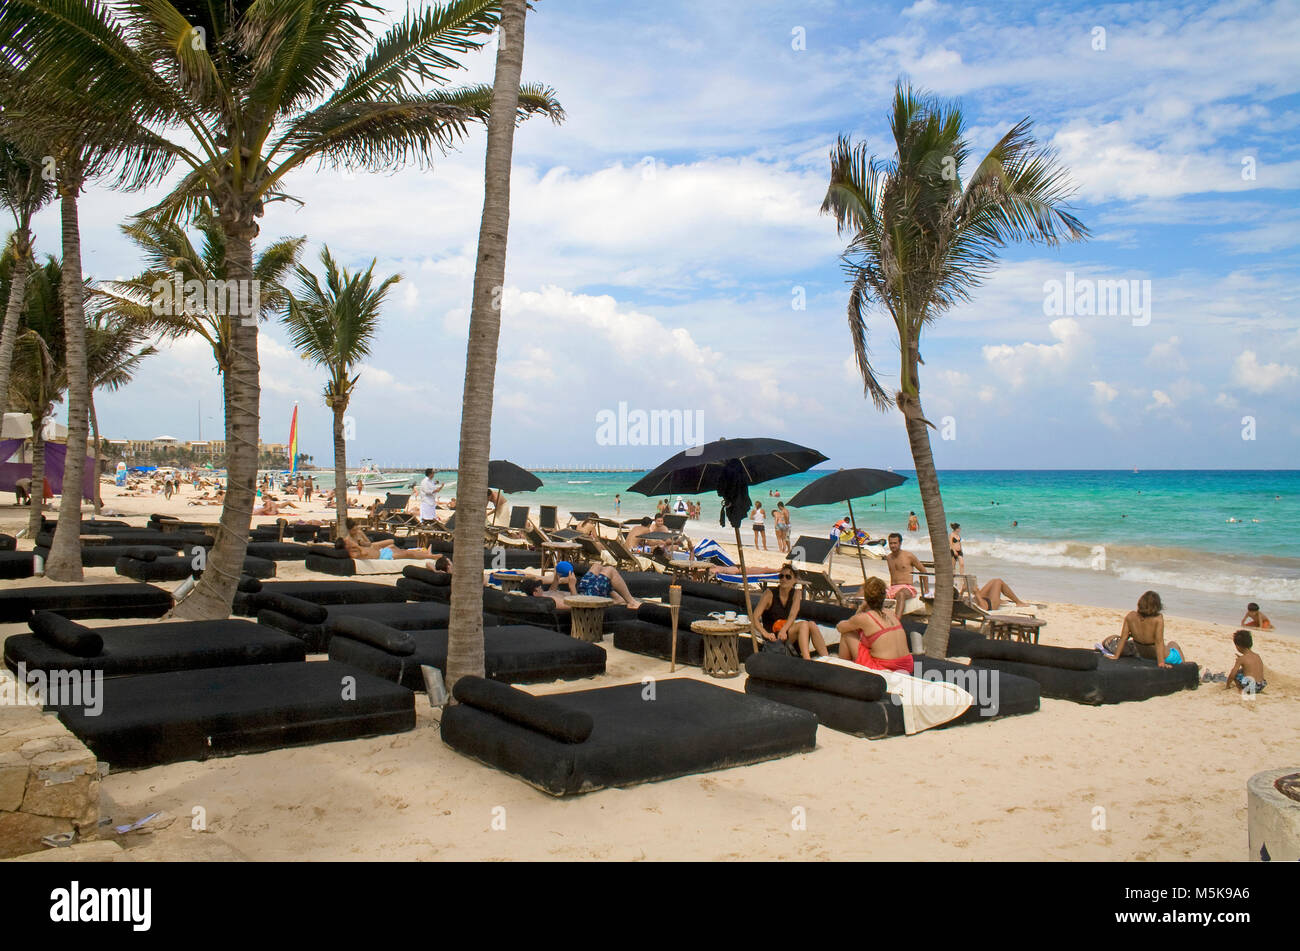 Komfortable Strandliegen am Strand von Playa del Carmen, Mexiko, Karibik | Bequeme Sonnenliegen am Strand von Playa del Carmen, Mexiko, Karibik Stockfoto